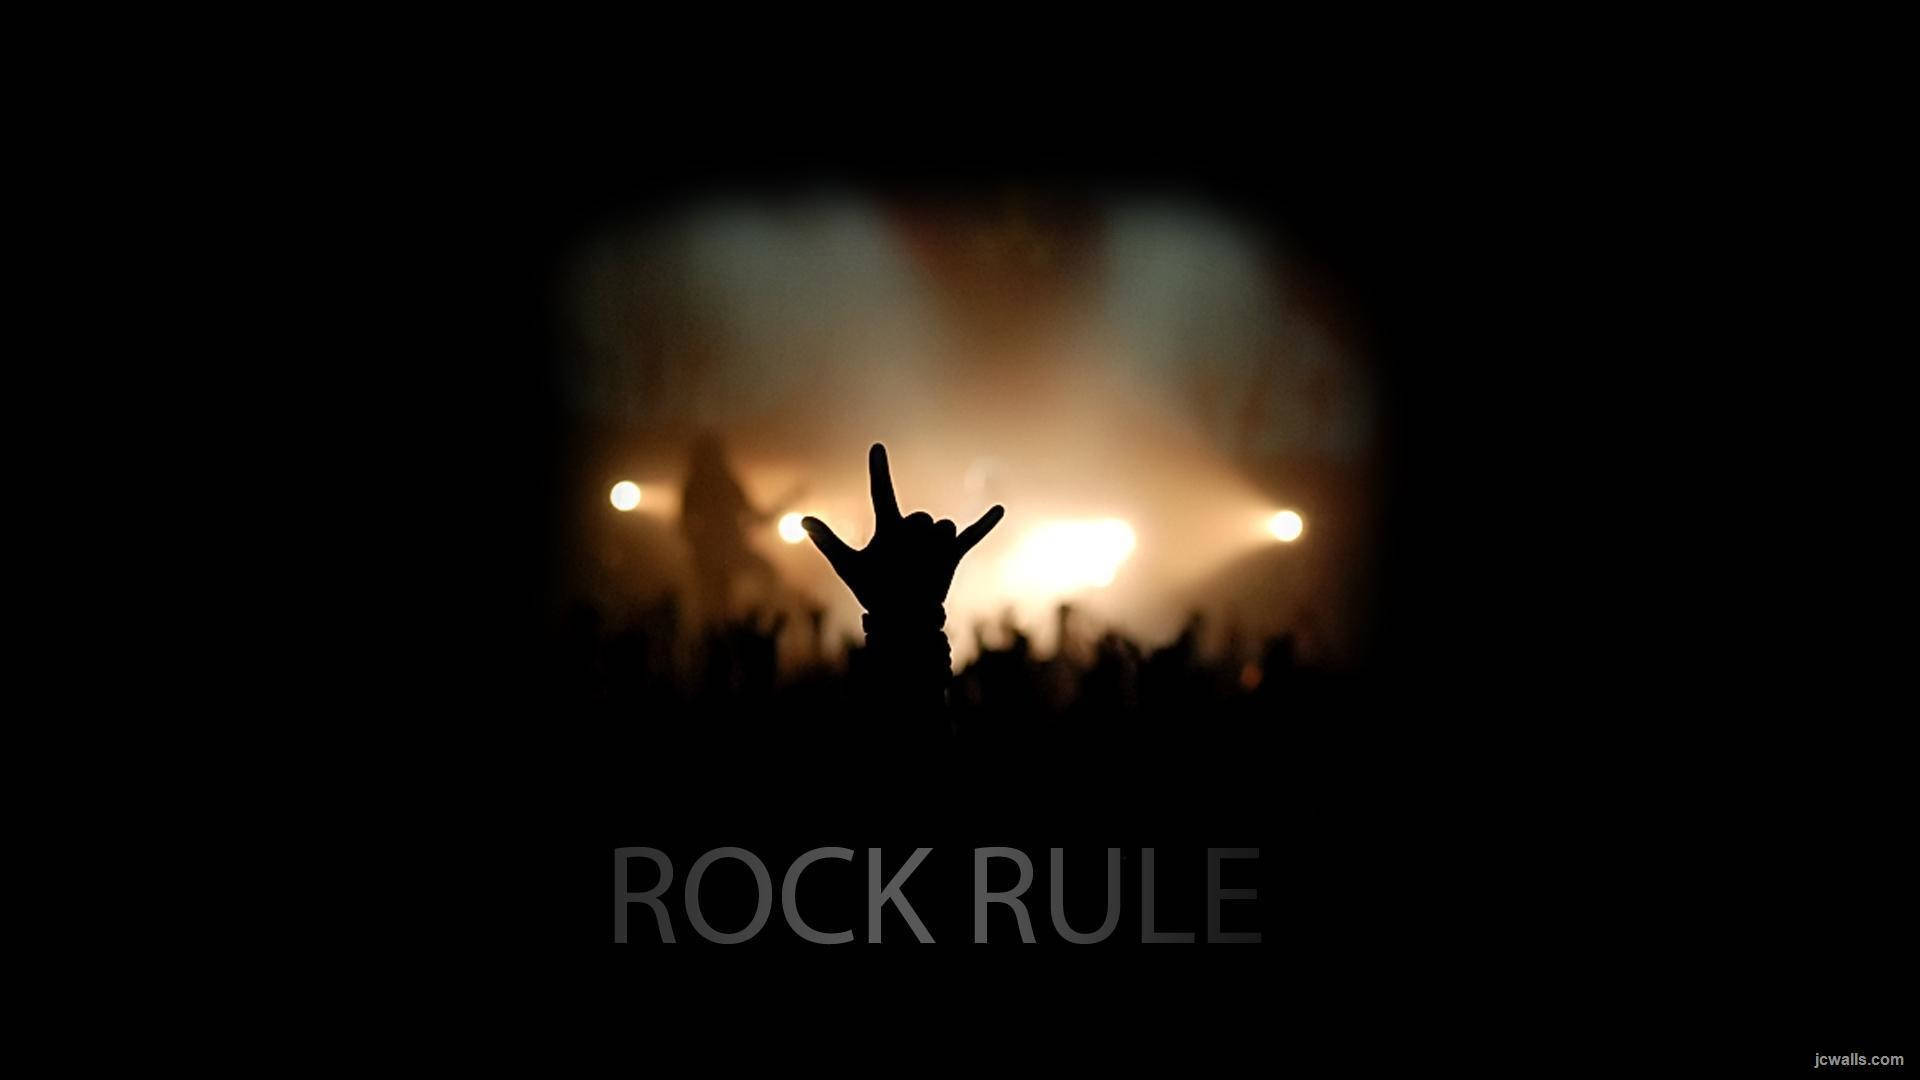 Sinalde Rock Em Evento De Música Legal. Papel de Parede